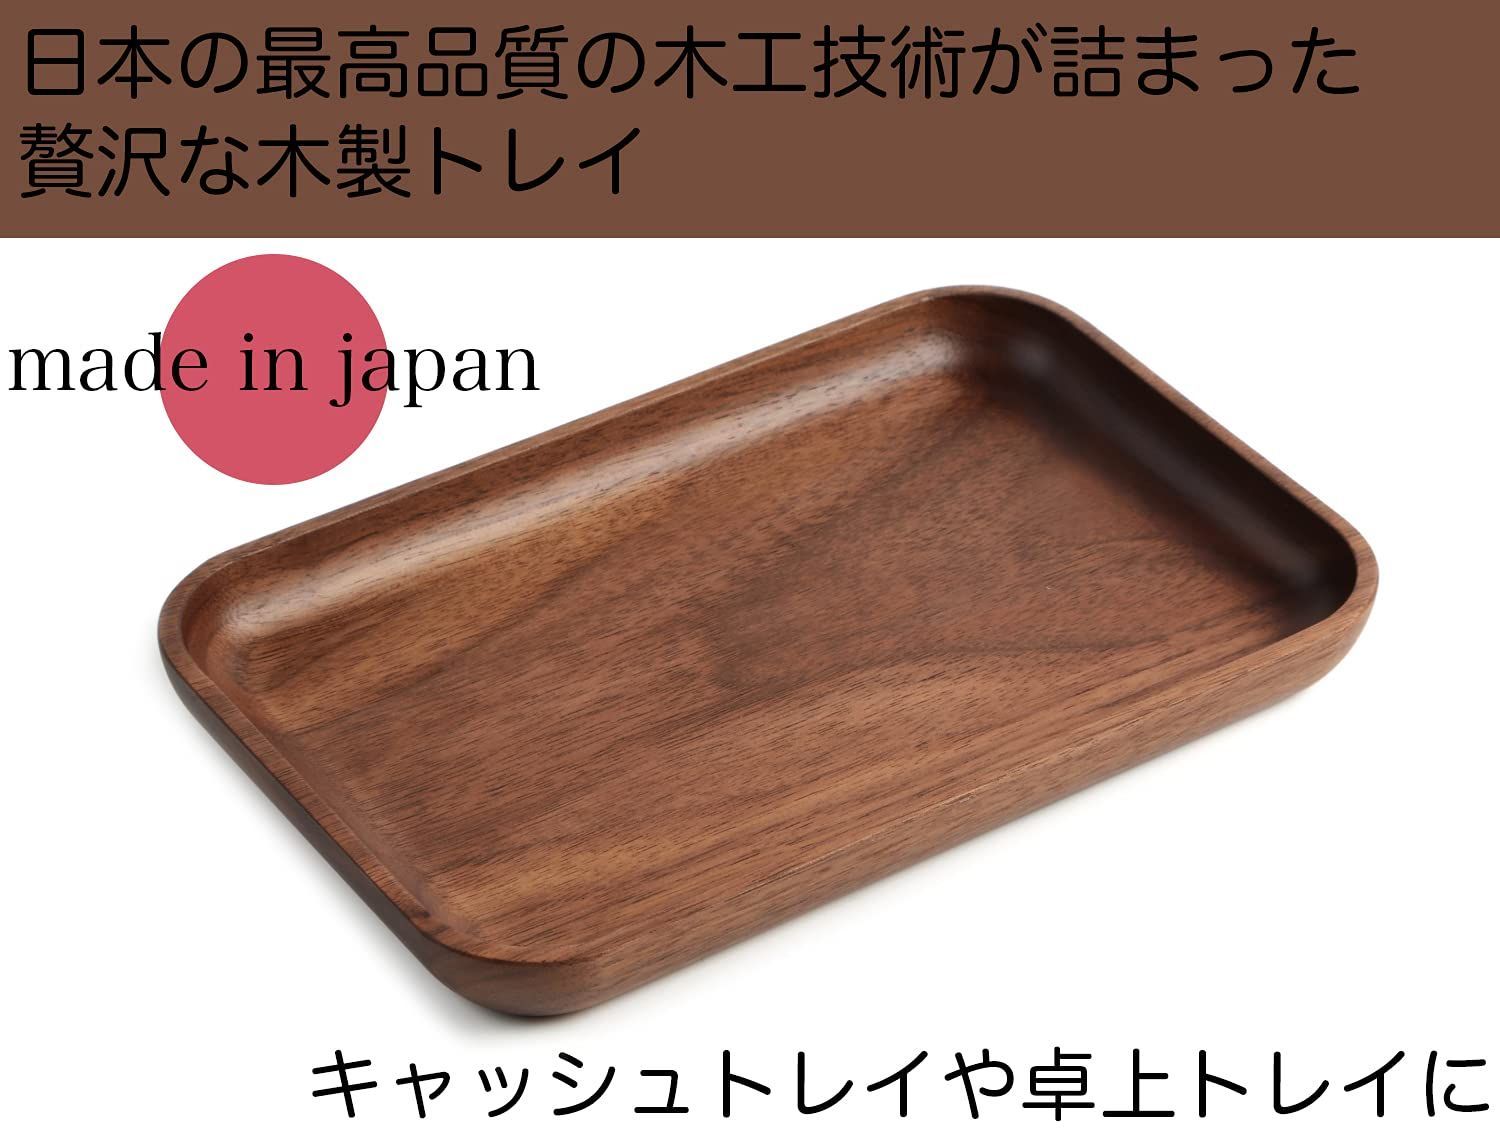 【カラー: ウォールナット】ササキ工芸 キャッシュトレイ コイントレイ 木製 ウ-2